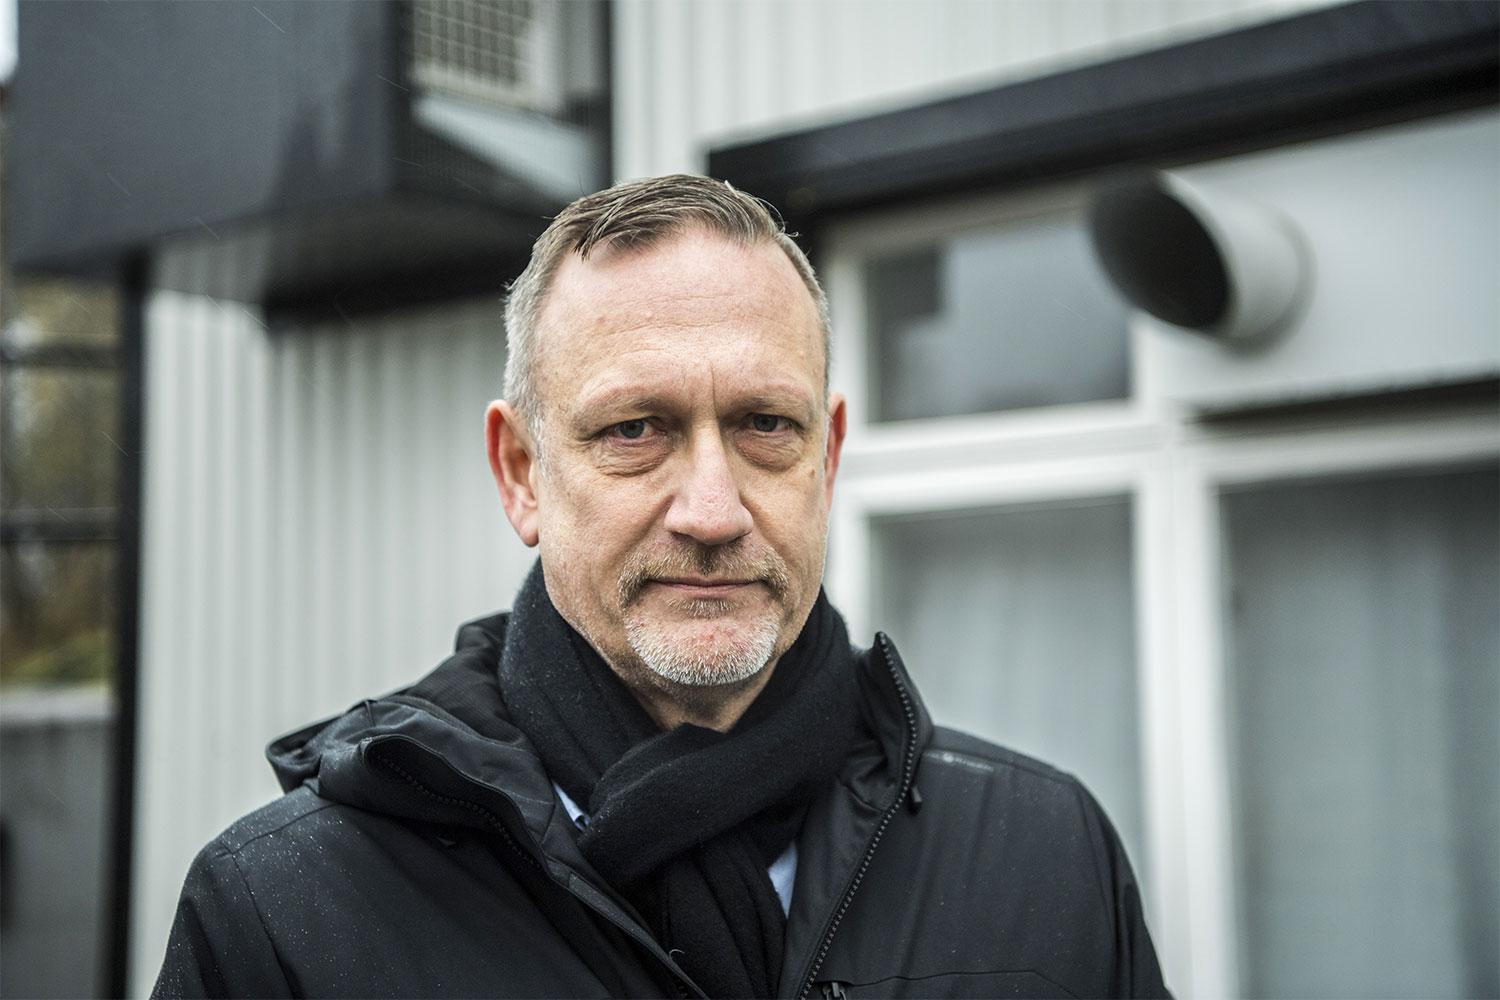 Flytten till Östersund kommer spara tio miljoner, enligt Arlas kommunikationsdirektör Gunnar Gidefeldt.